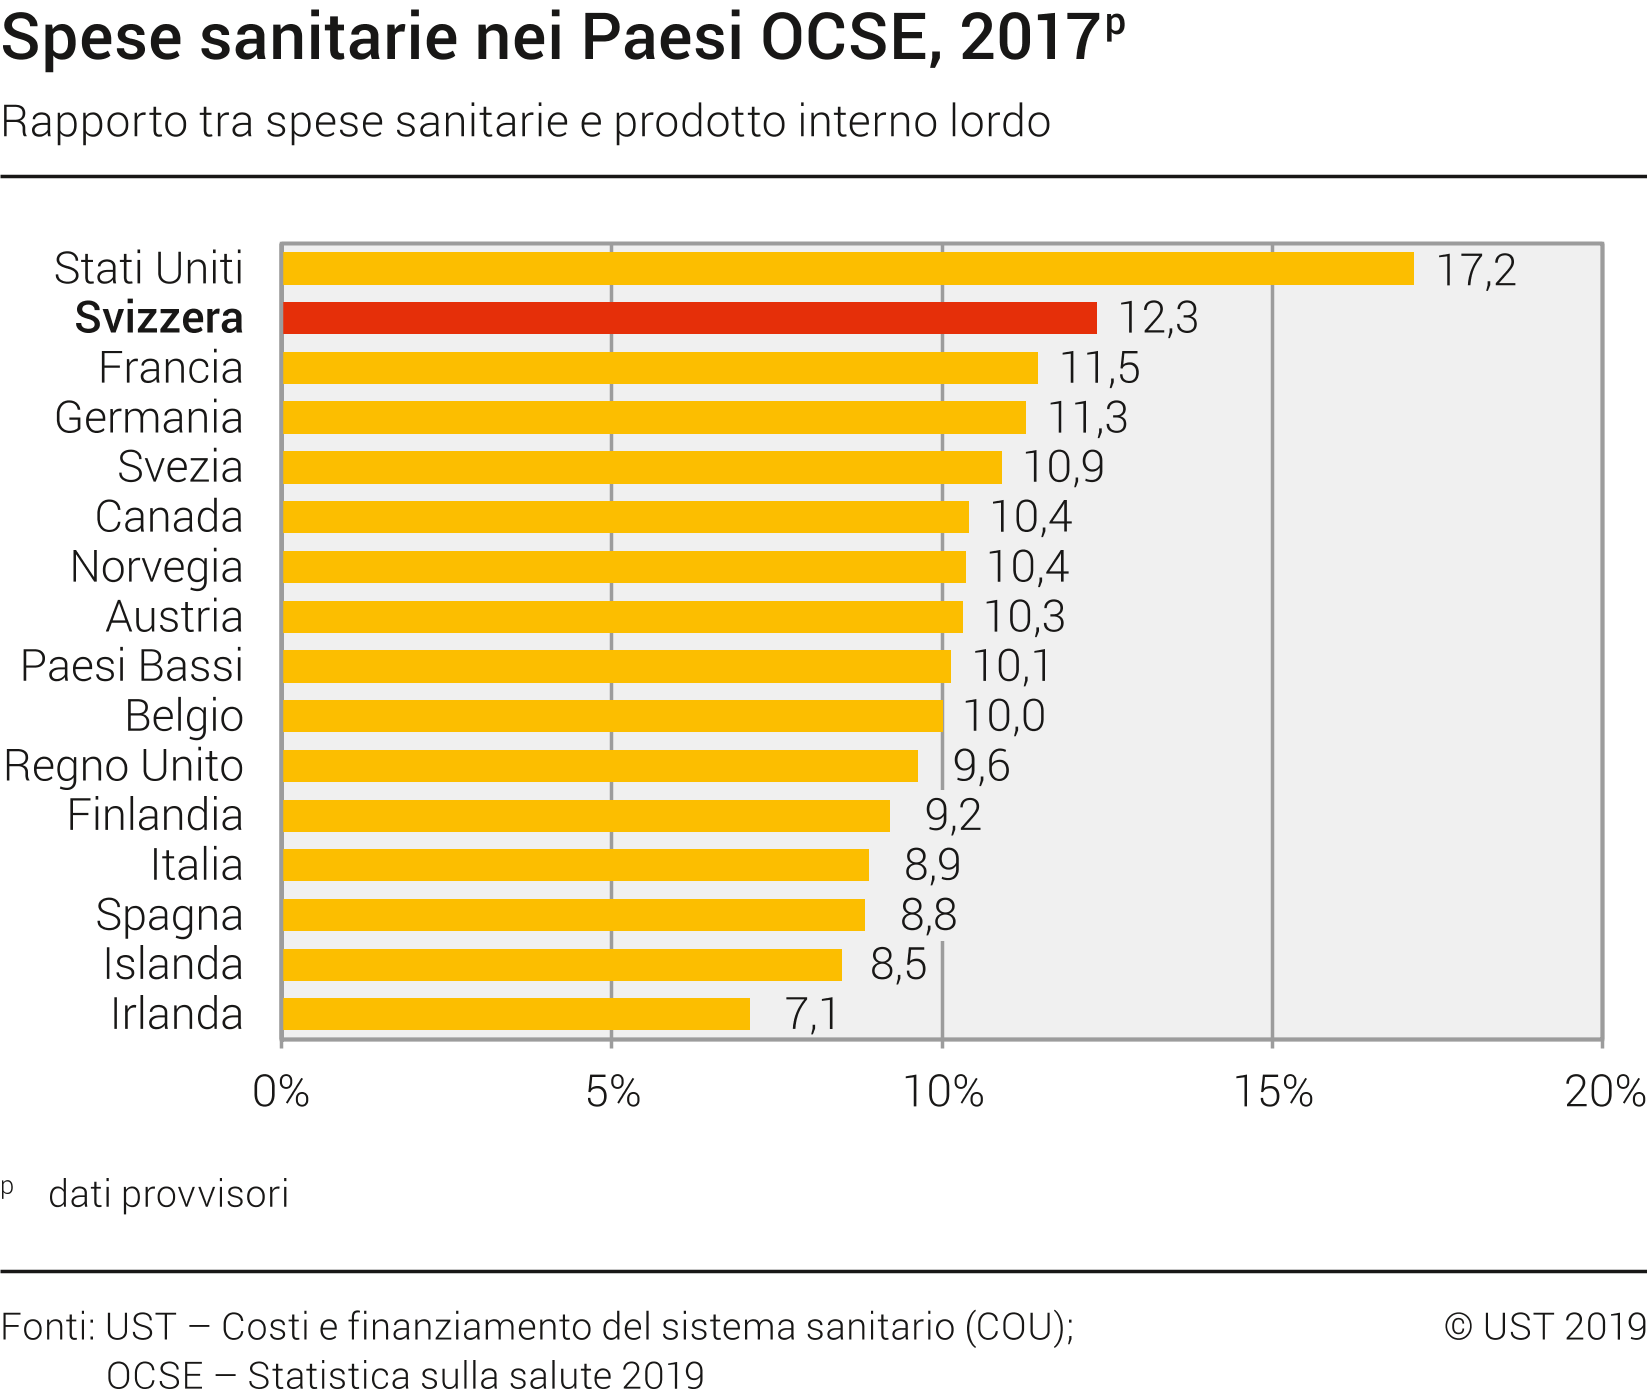 Tabella delle spese sanitarie nei paesi OCSE rispetto al PIL: Primeggiano gli USA seguiti da Svizzera e Francia.